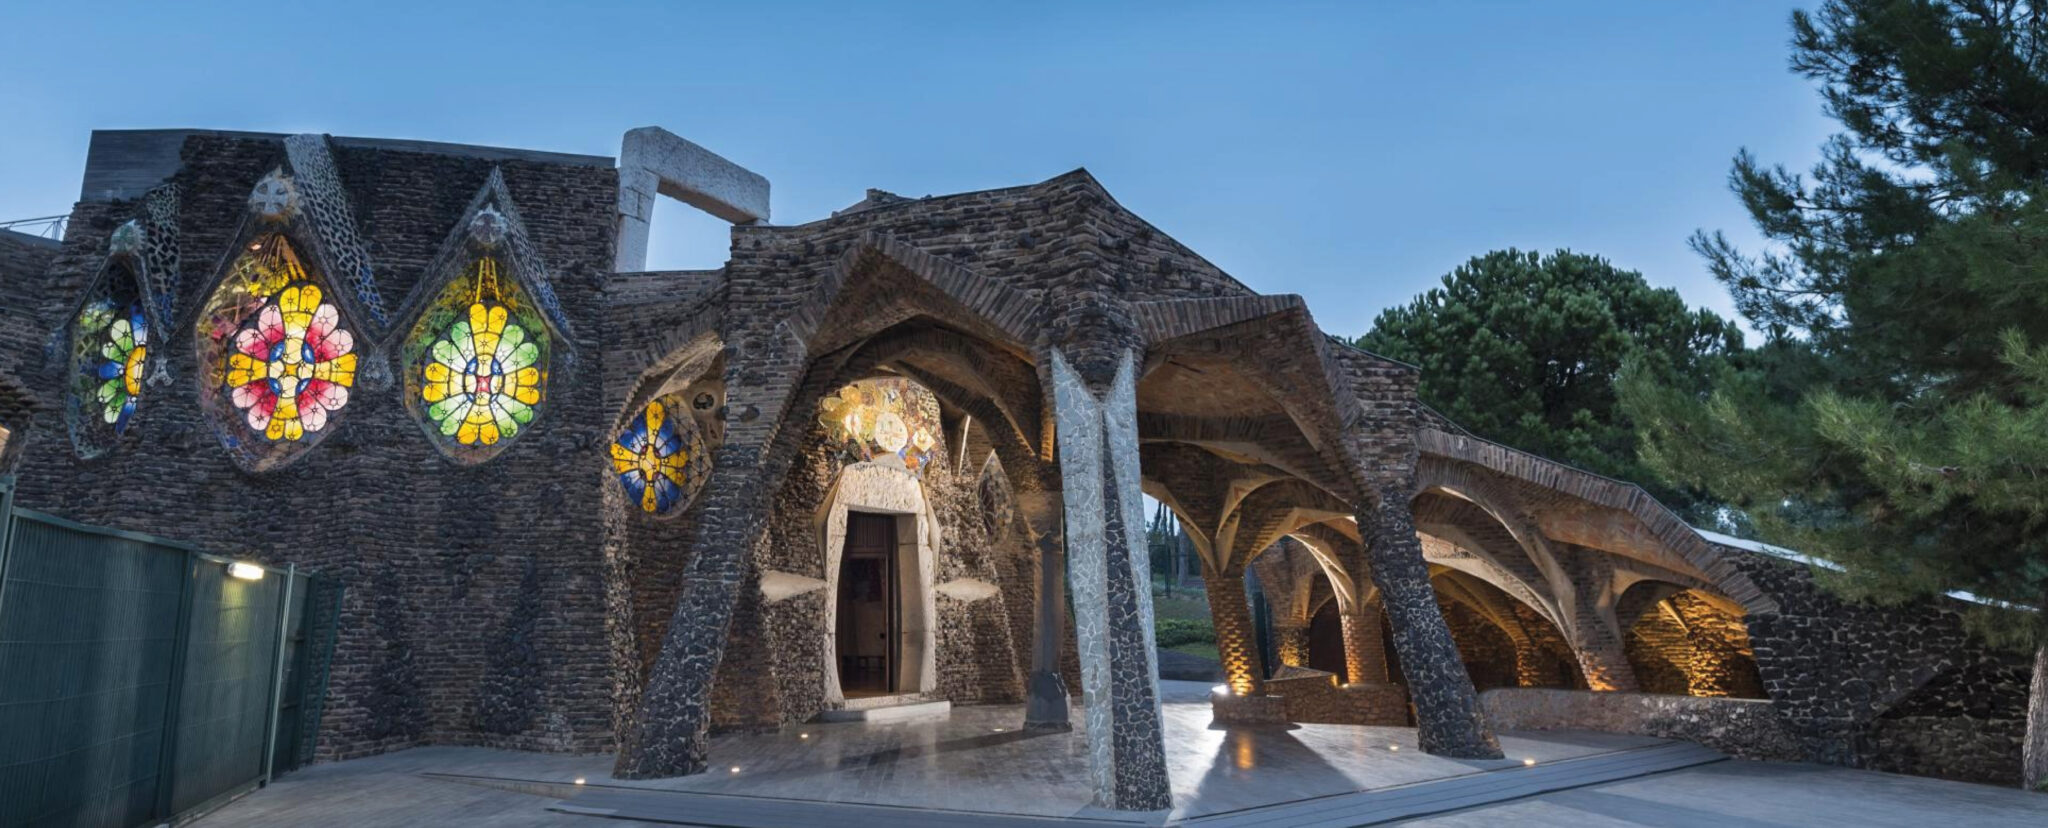 Cripta Gaudí de la Colonia Güell descuento Carné ISIC